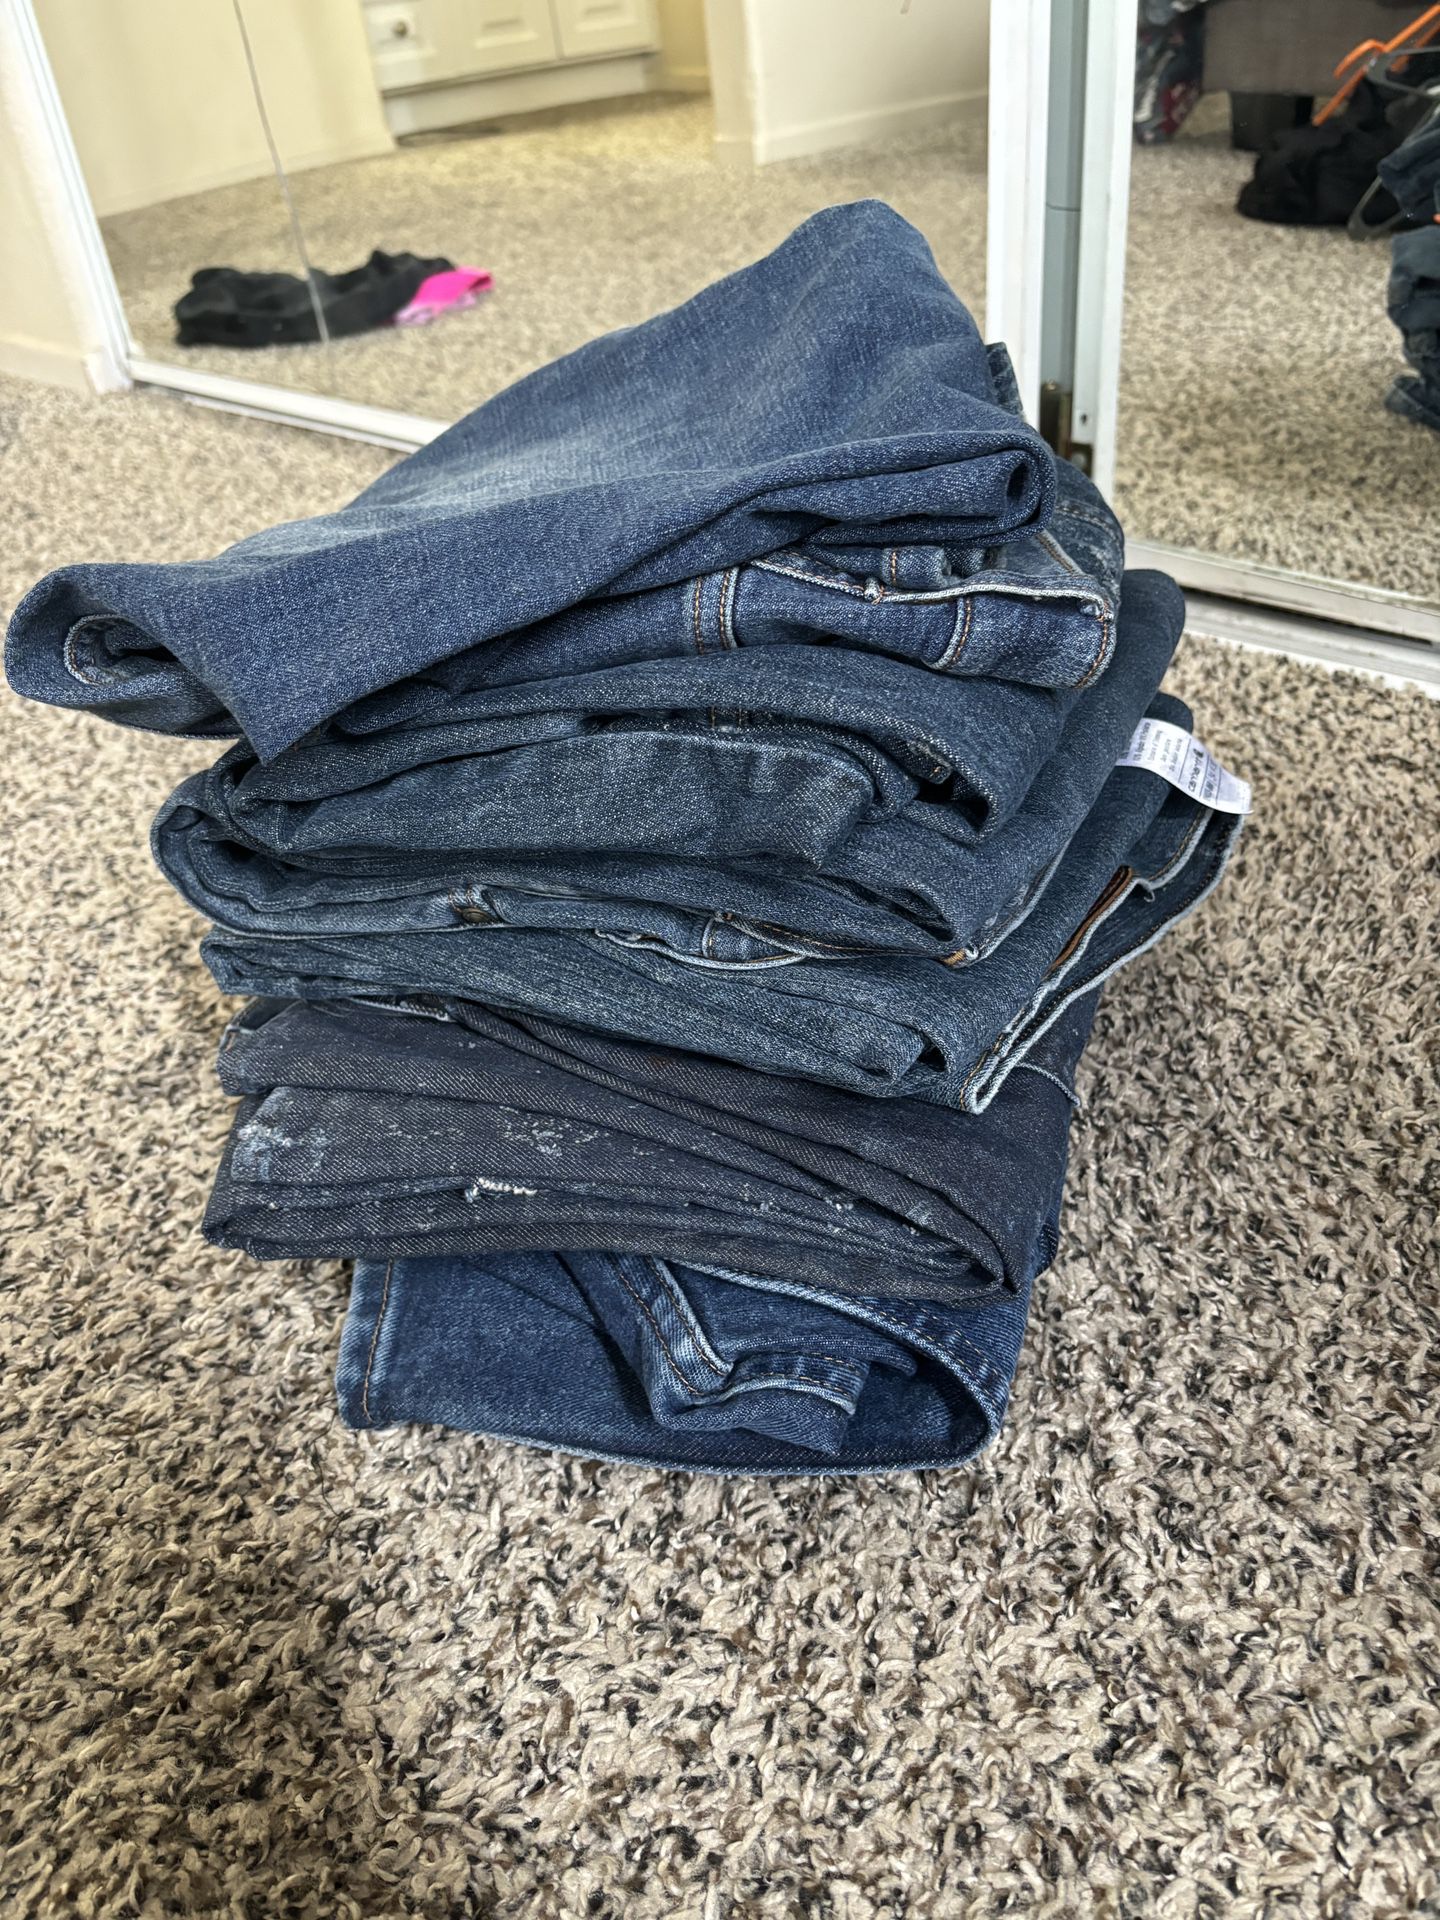 Levi’s Work Jeans. (36” waist)  /$5 each